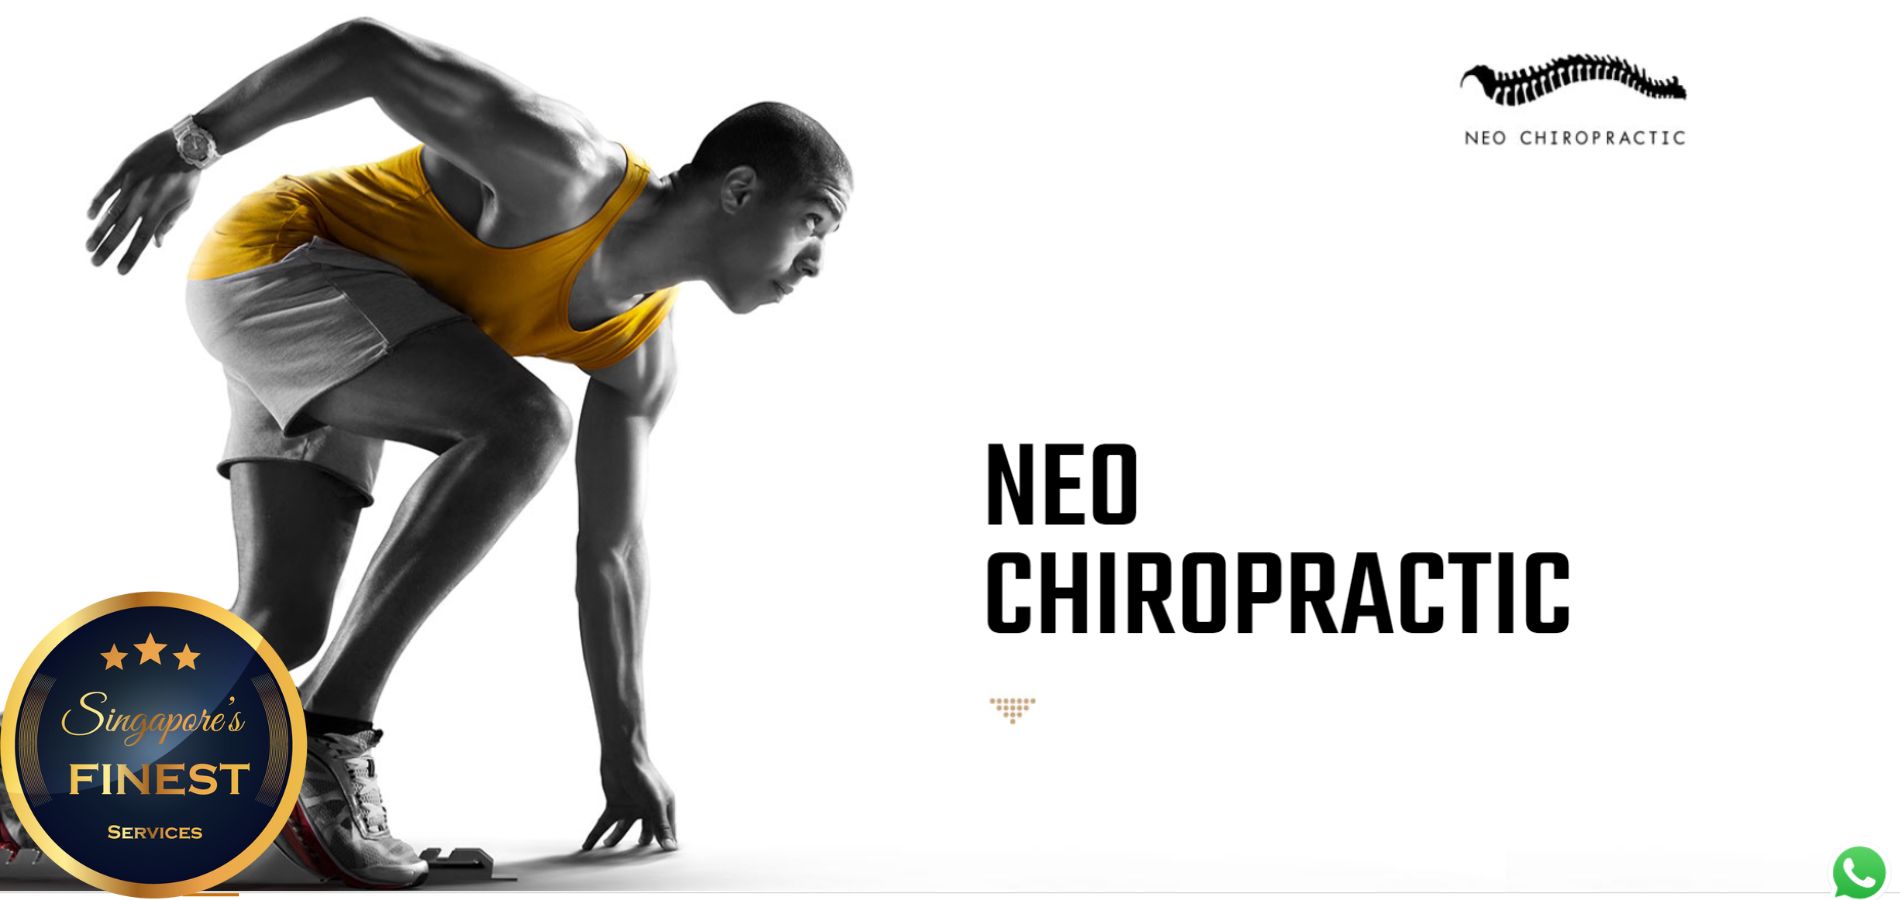 Neo Chiropractic - Best Chiropractors in Singapore